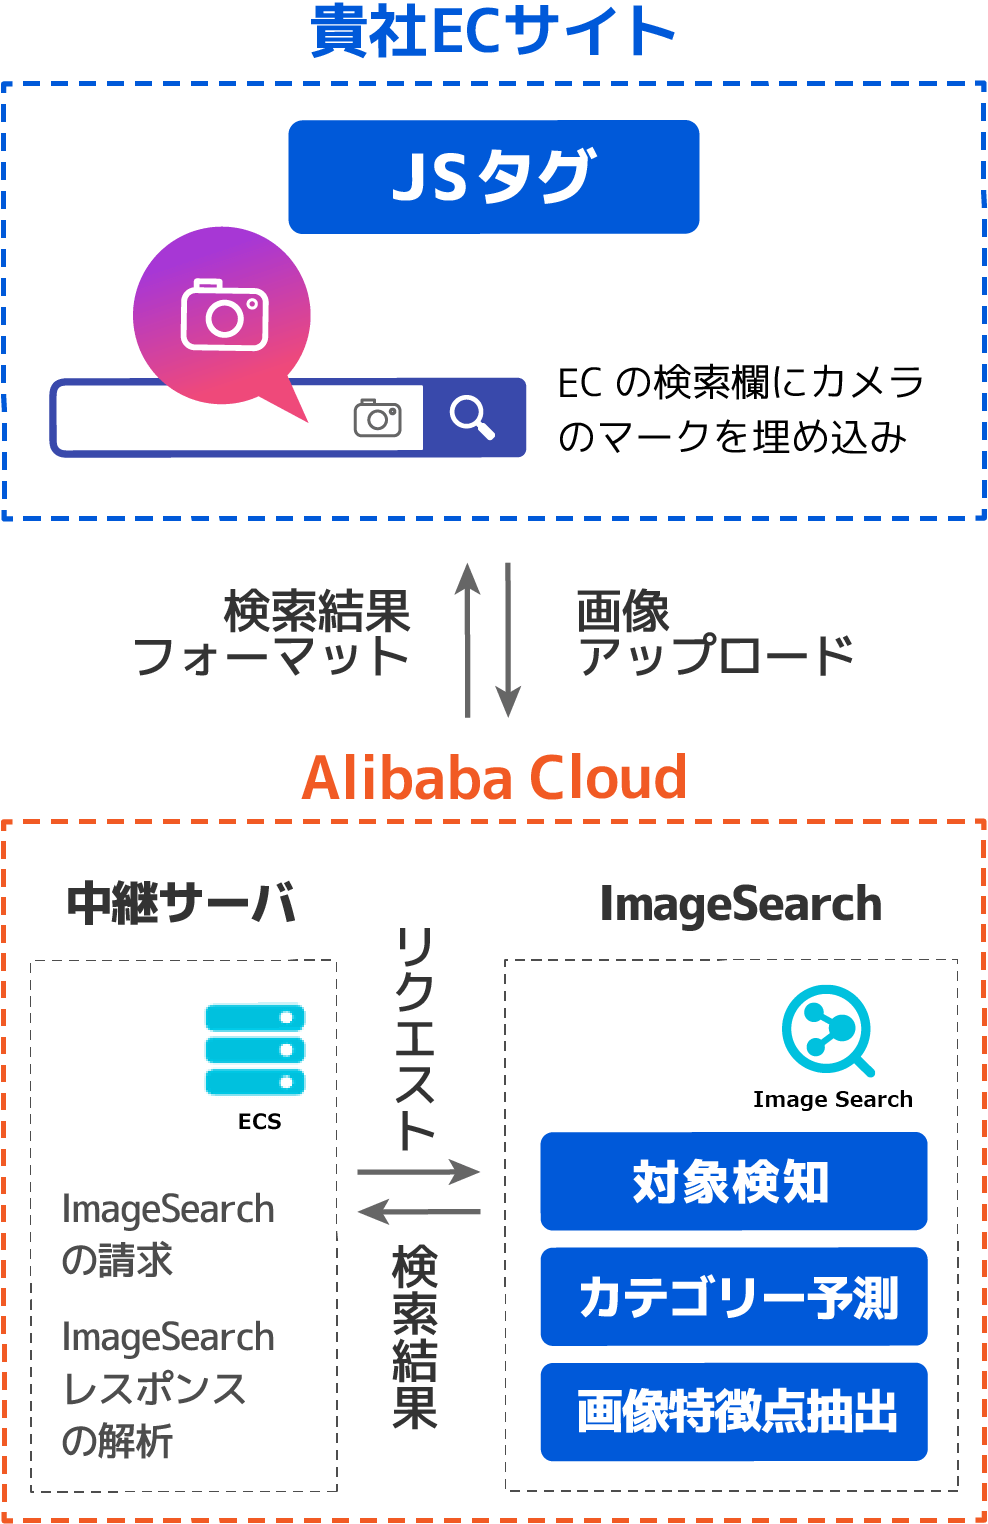 貴社ECサイト Alibaba Cloud